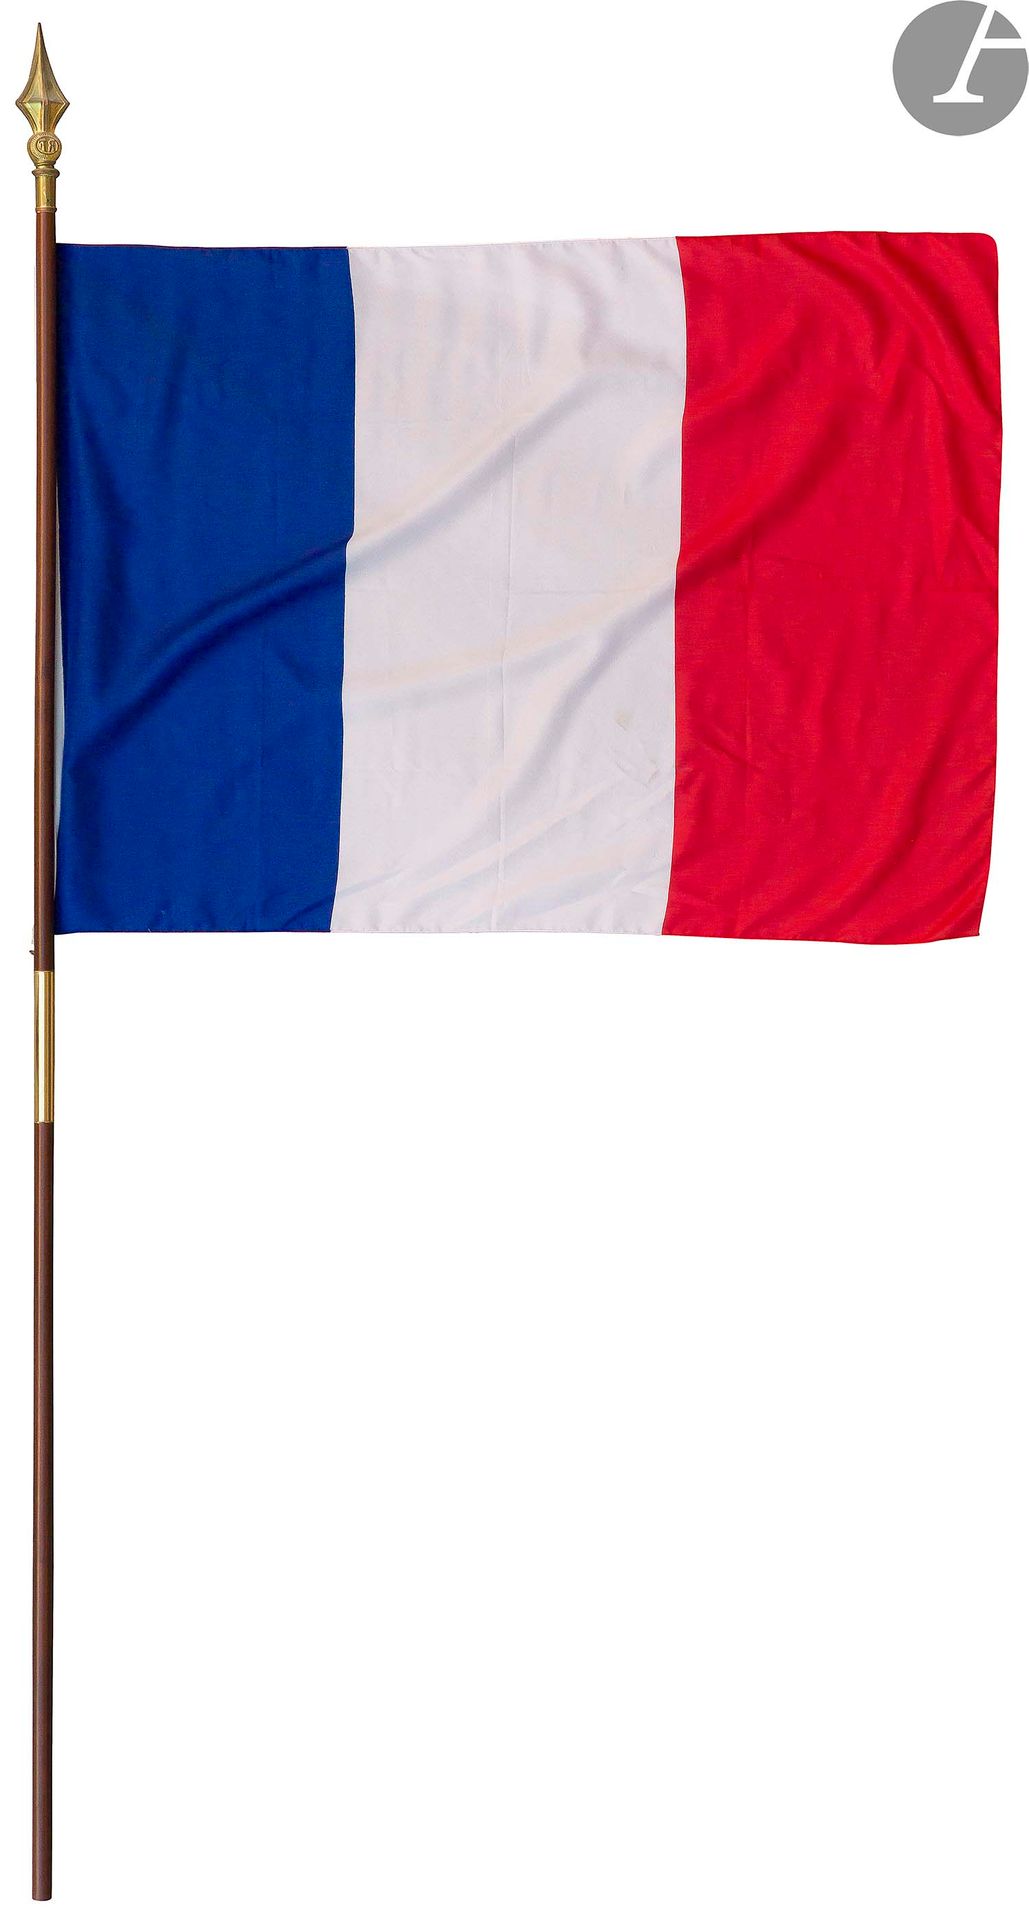 Null 一套旗帜:
- 四面法国旗帜，其中三面挂在旗杆上。一个有金边的。
- 一面英国国旗。
- 一面苏联国旗，镀银，有锤子和镰刀。